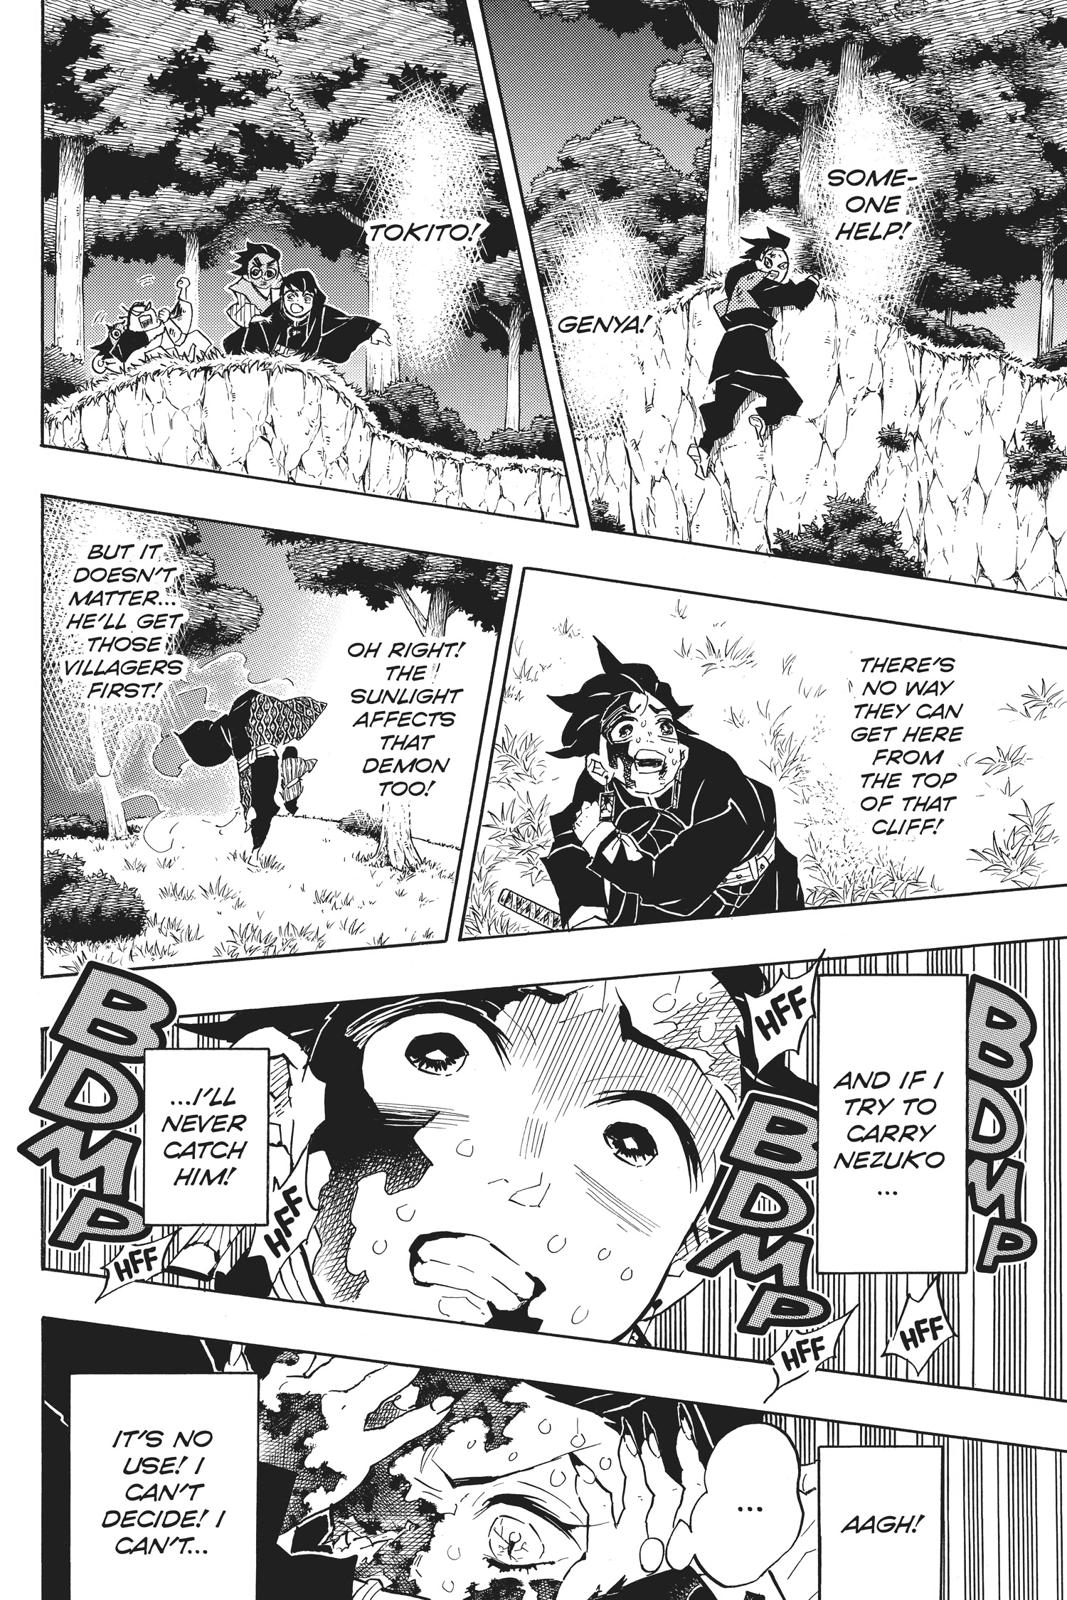 Demon Slayer Manga Manga Chapter - 126 - image 8